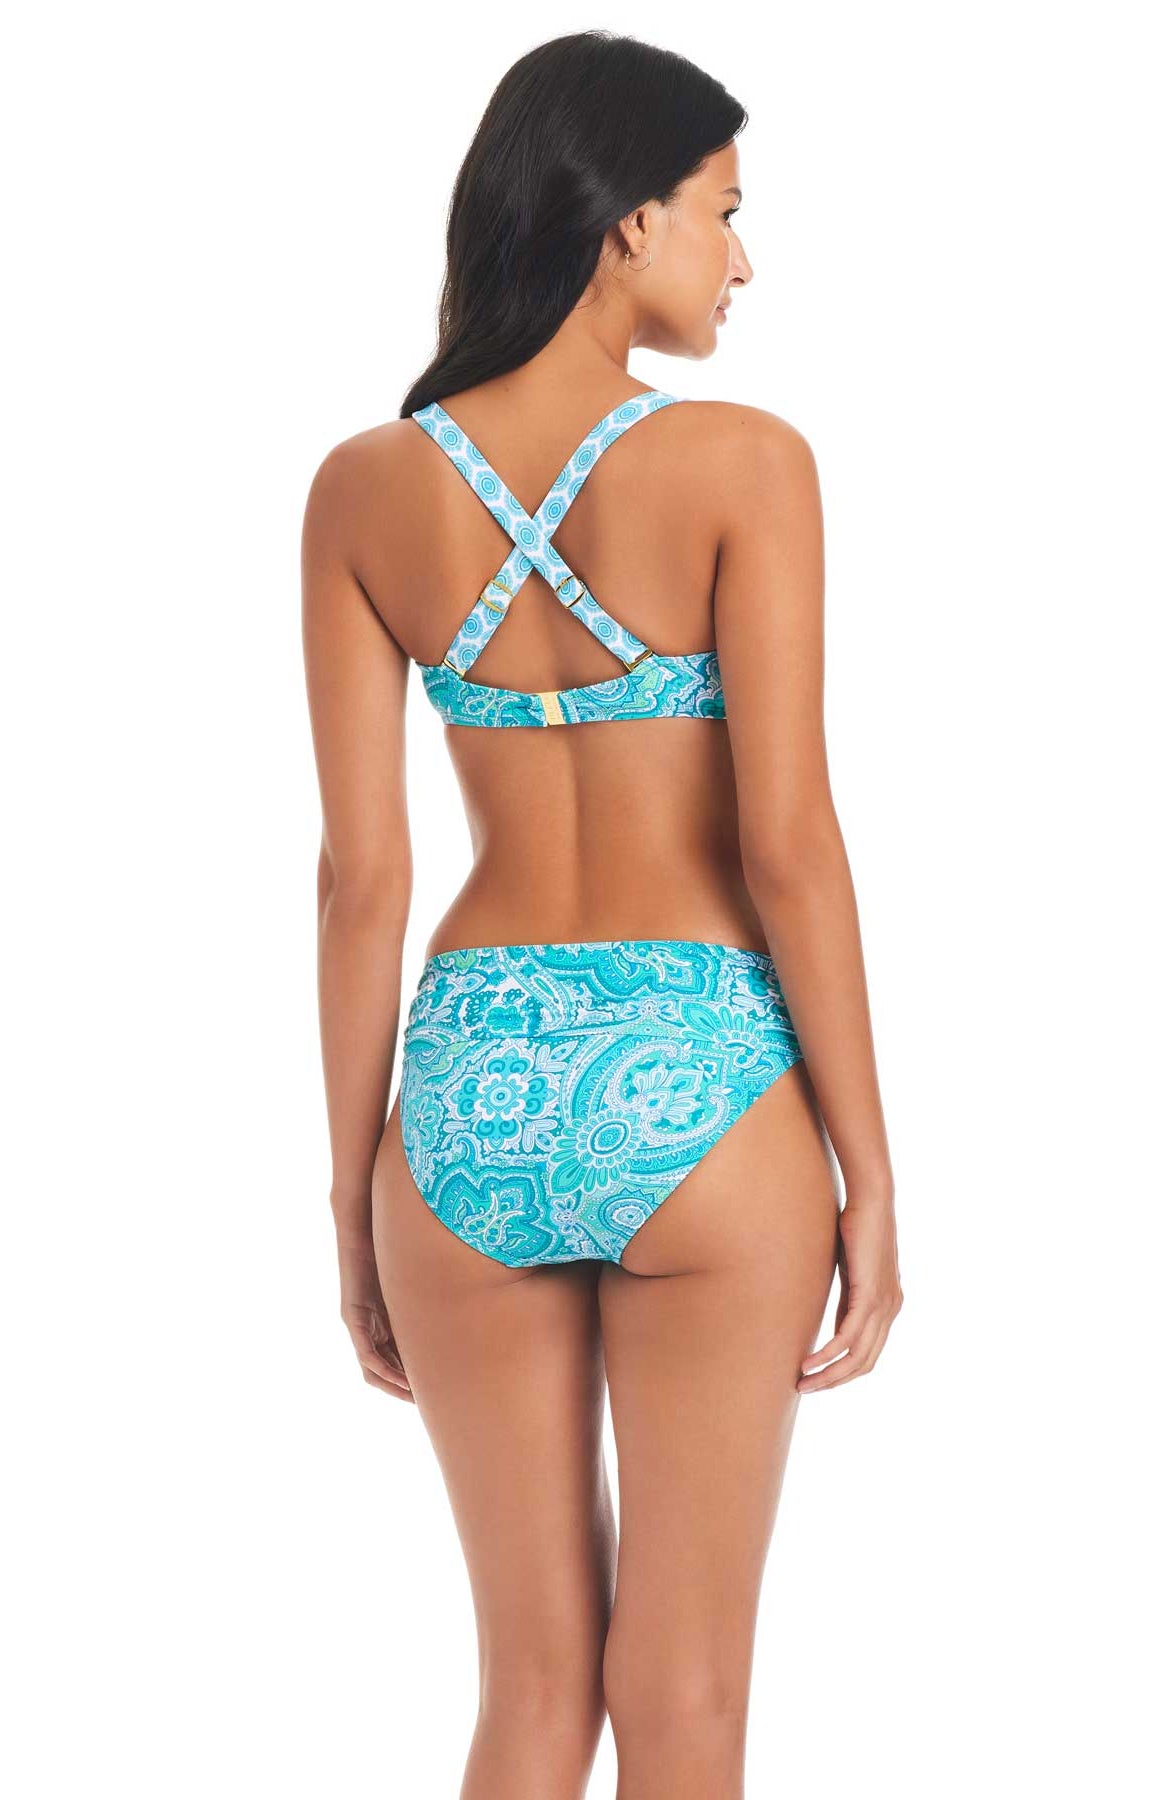 Bleu: Coastal Cool Over The Shoulders D-Cup Bikini Top